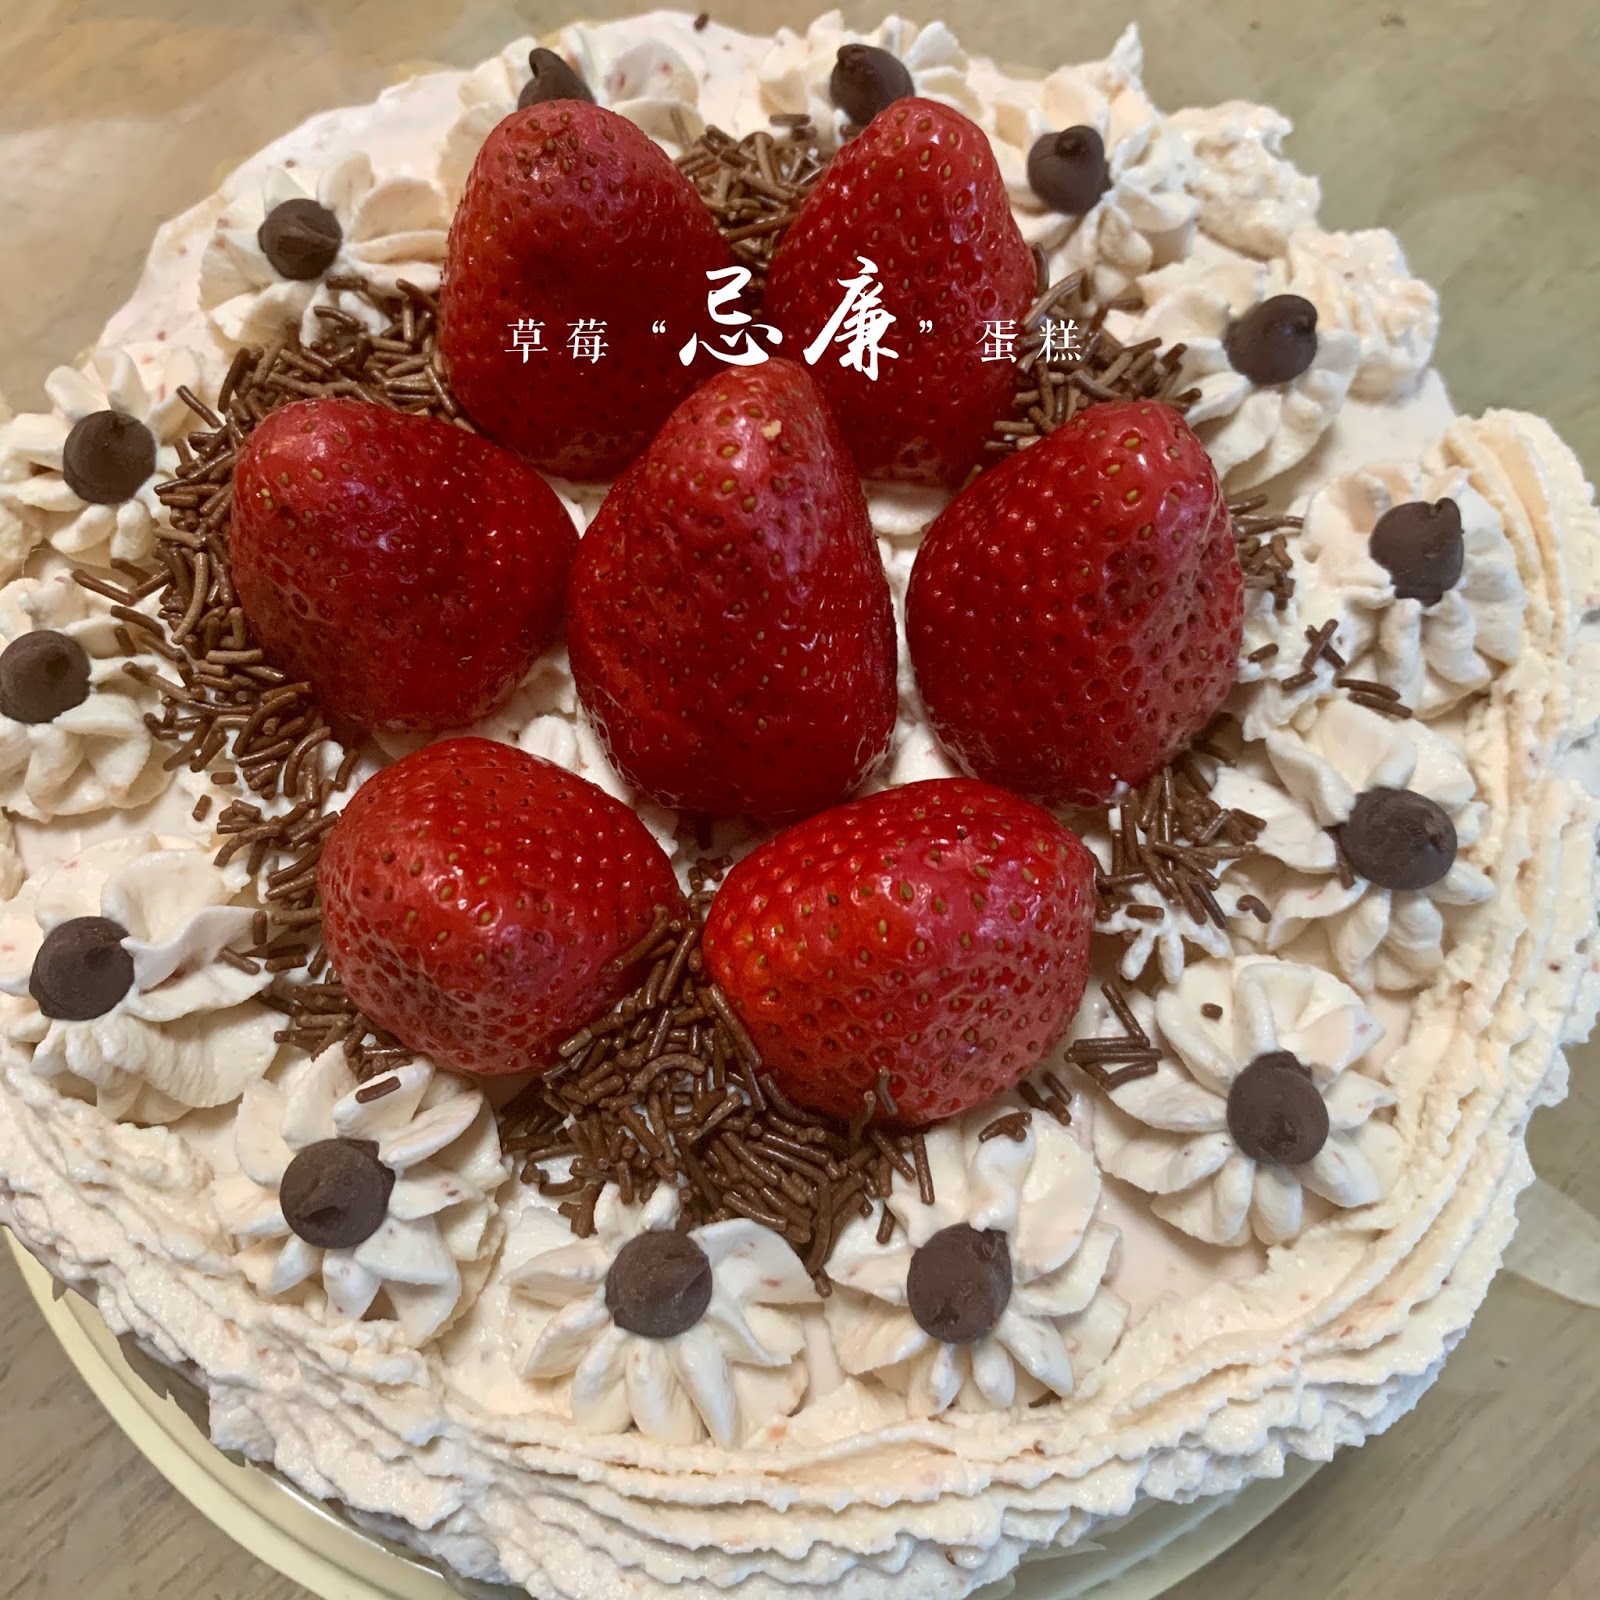 無糖伯爵茶忌廉蛋糕 | Cake Sakura Ltd